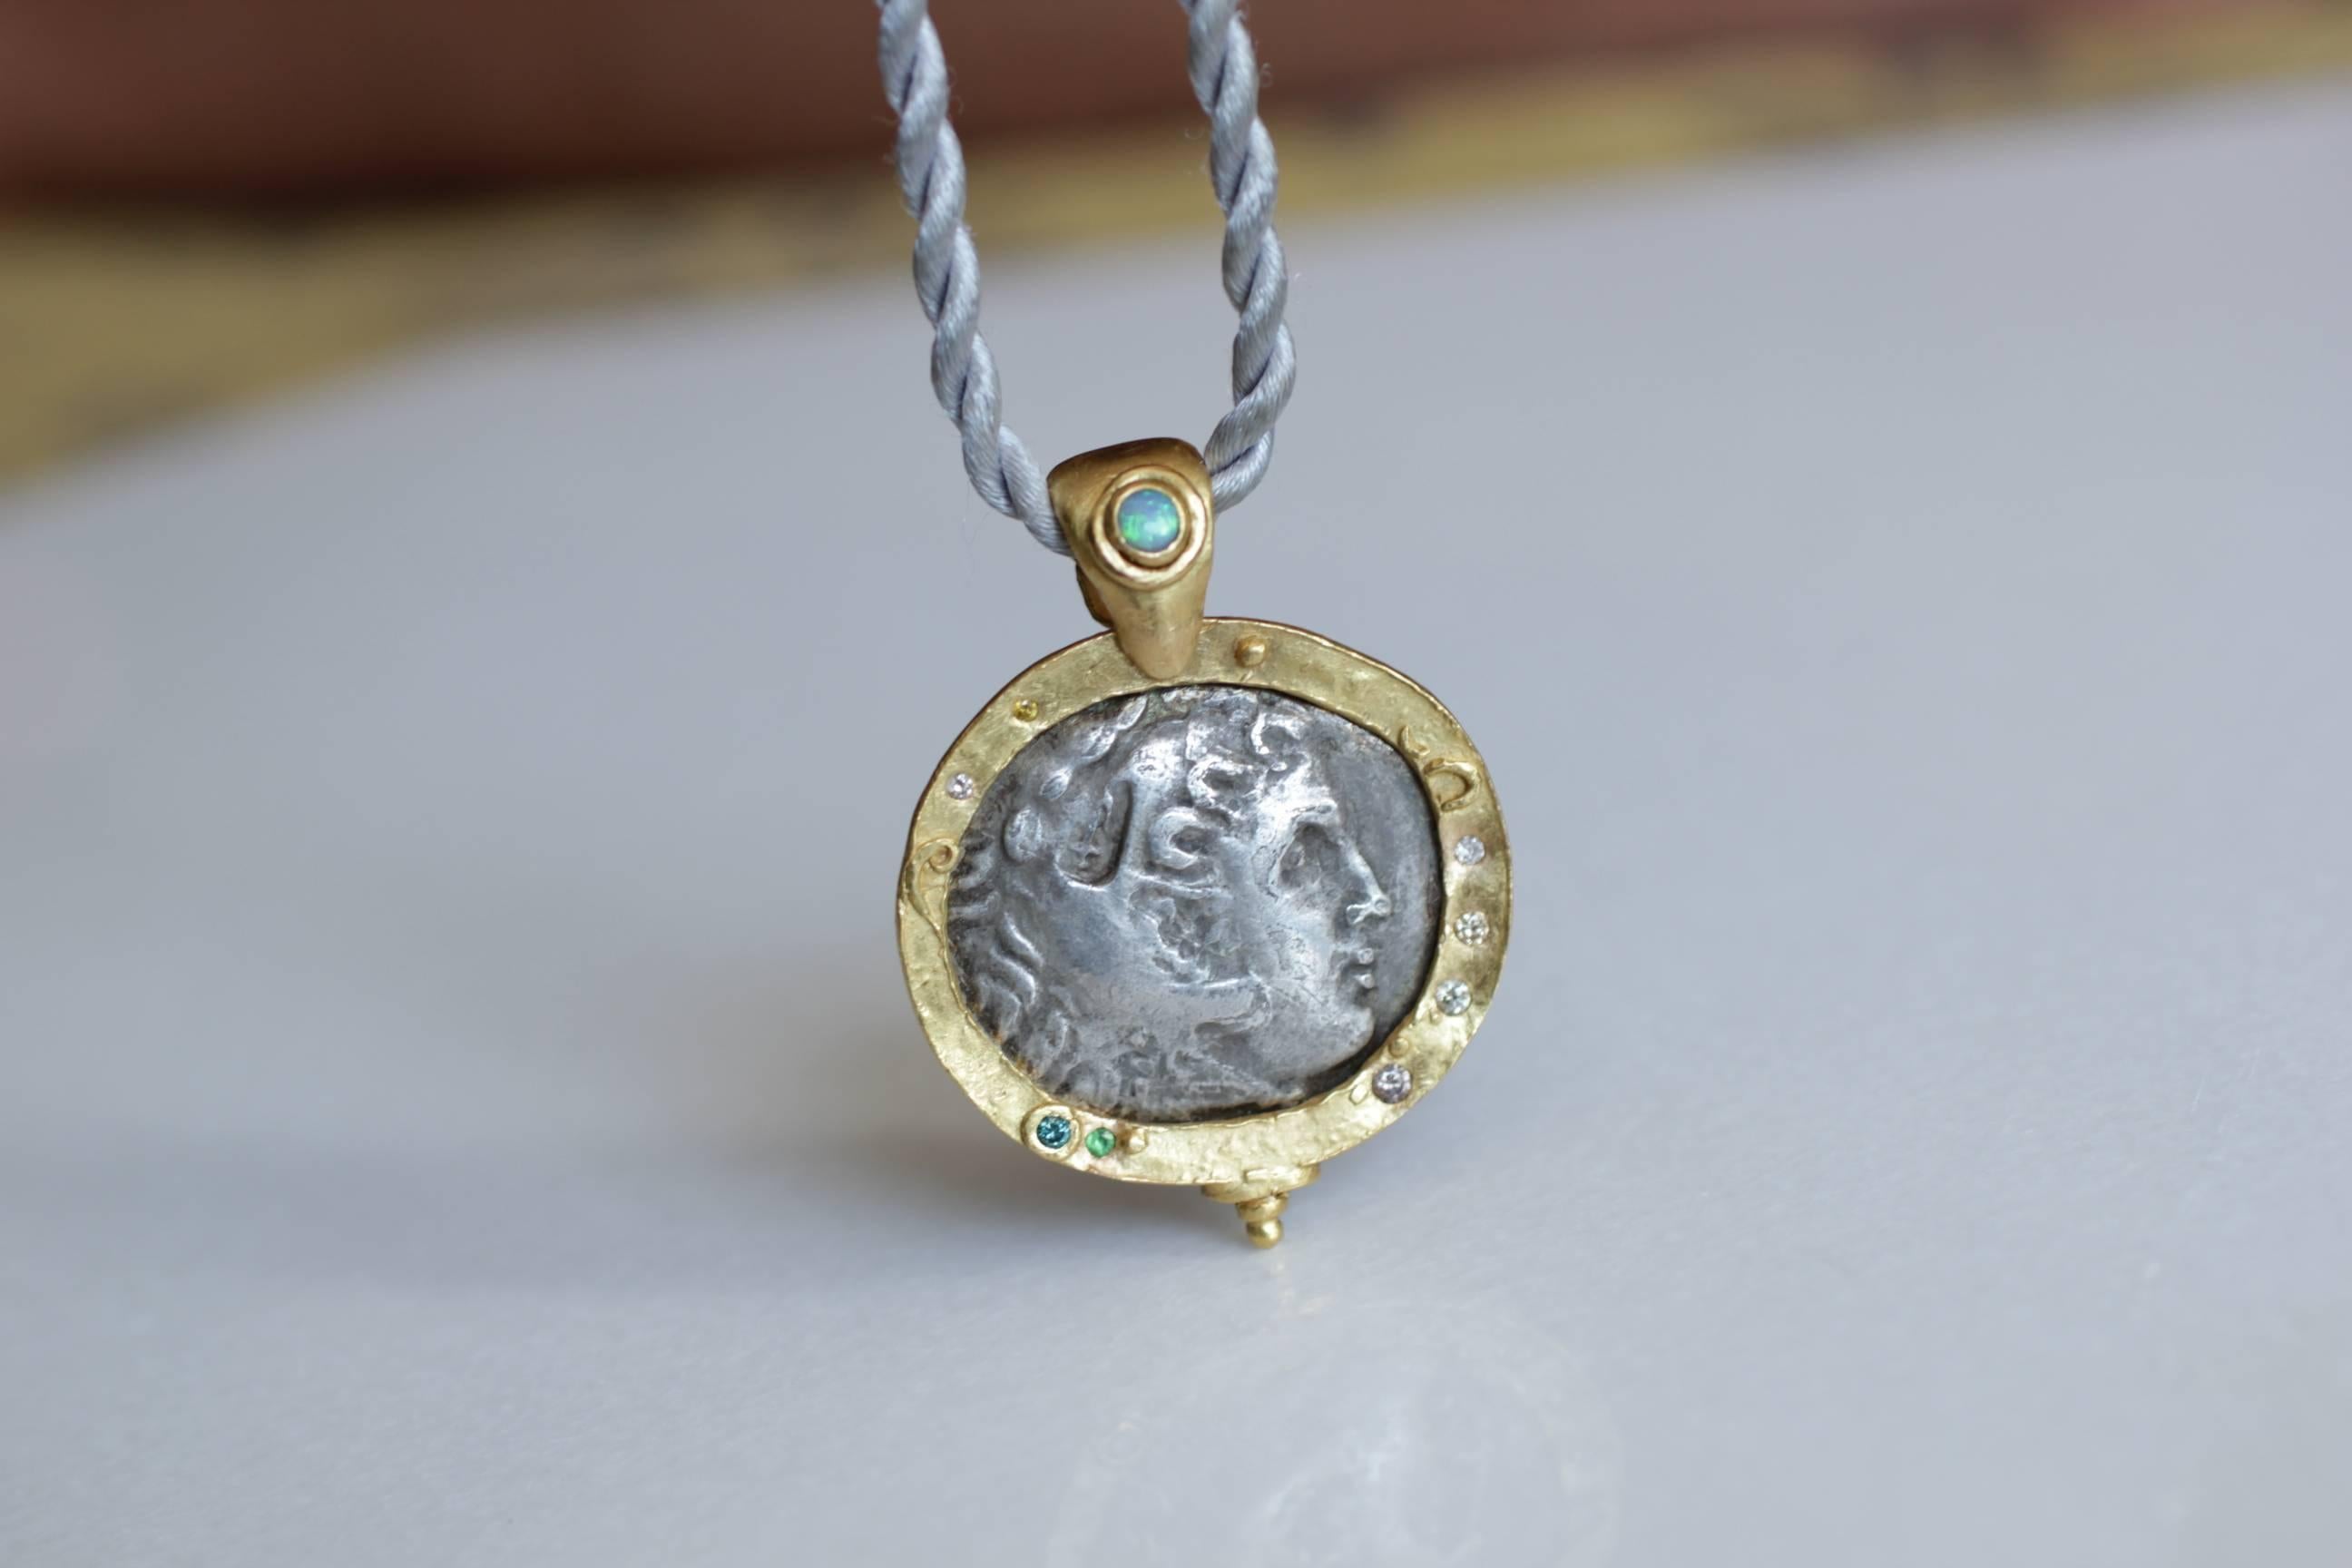 Collier pendentif en argent ancien avec médaillon en forme de pièce de monnaie macédonienne. Grande pièce grecque antique du IIIe siècle avant J.-C., sertie dans un chaton en or 21 carats, rehaussée de petits diamants et de grenats. La bélière est